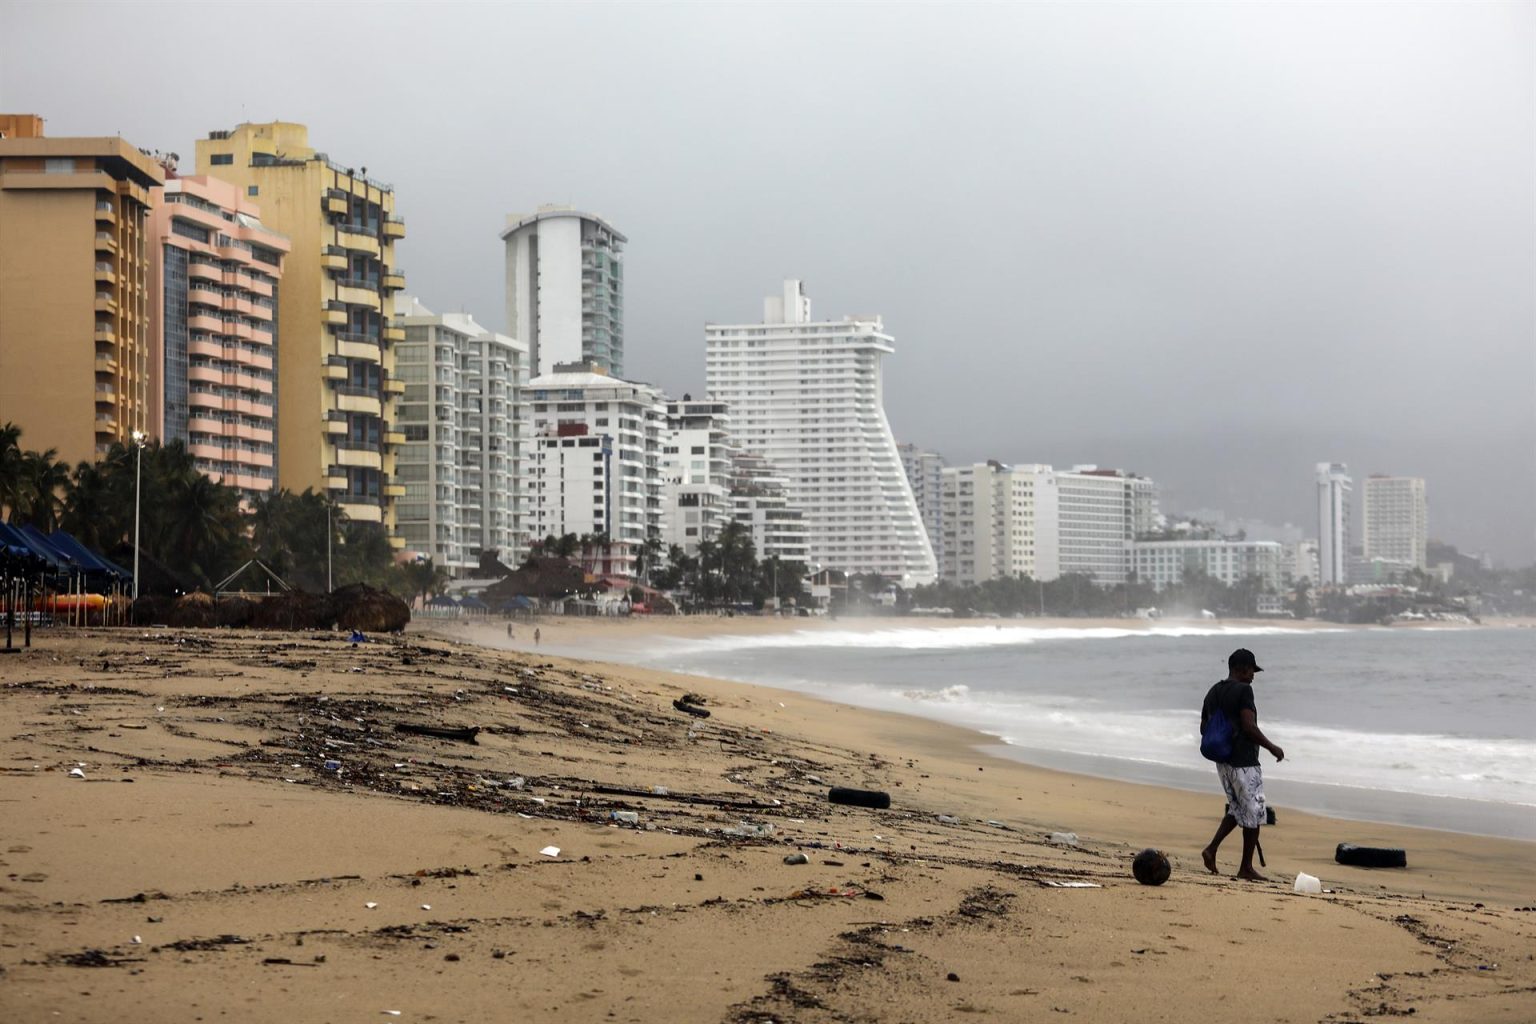 Fotografía de archivo de una persona que camina por una playa llena de basura debido a las fuertes lluvias, en el balneario de Acapulco, estado de Guerrero (México). EFE/ David Guzmán